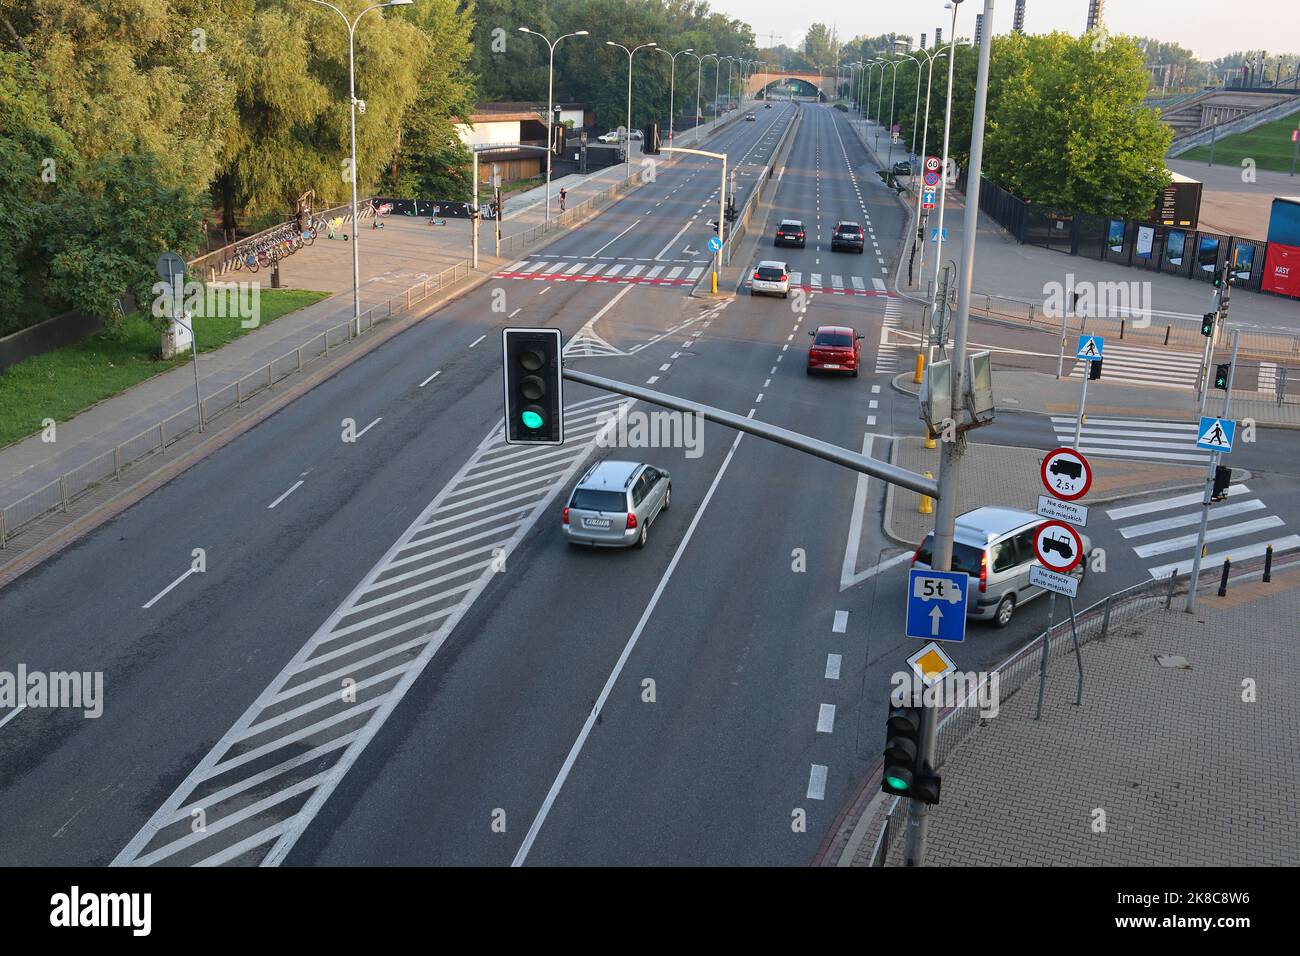 Warschau, Polen: Blick auf eine Autobahn mit Ampeln, Straßenmarkierungen und einer Steinbrücke im Hintergrund. Stockfoto